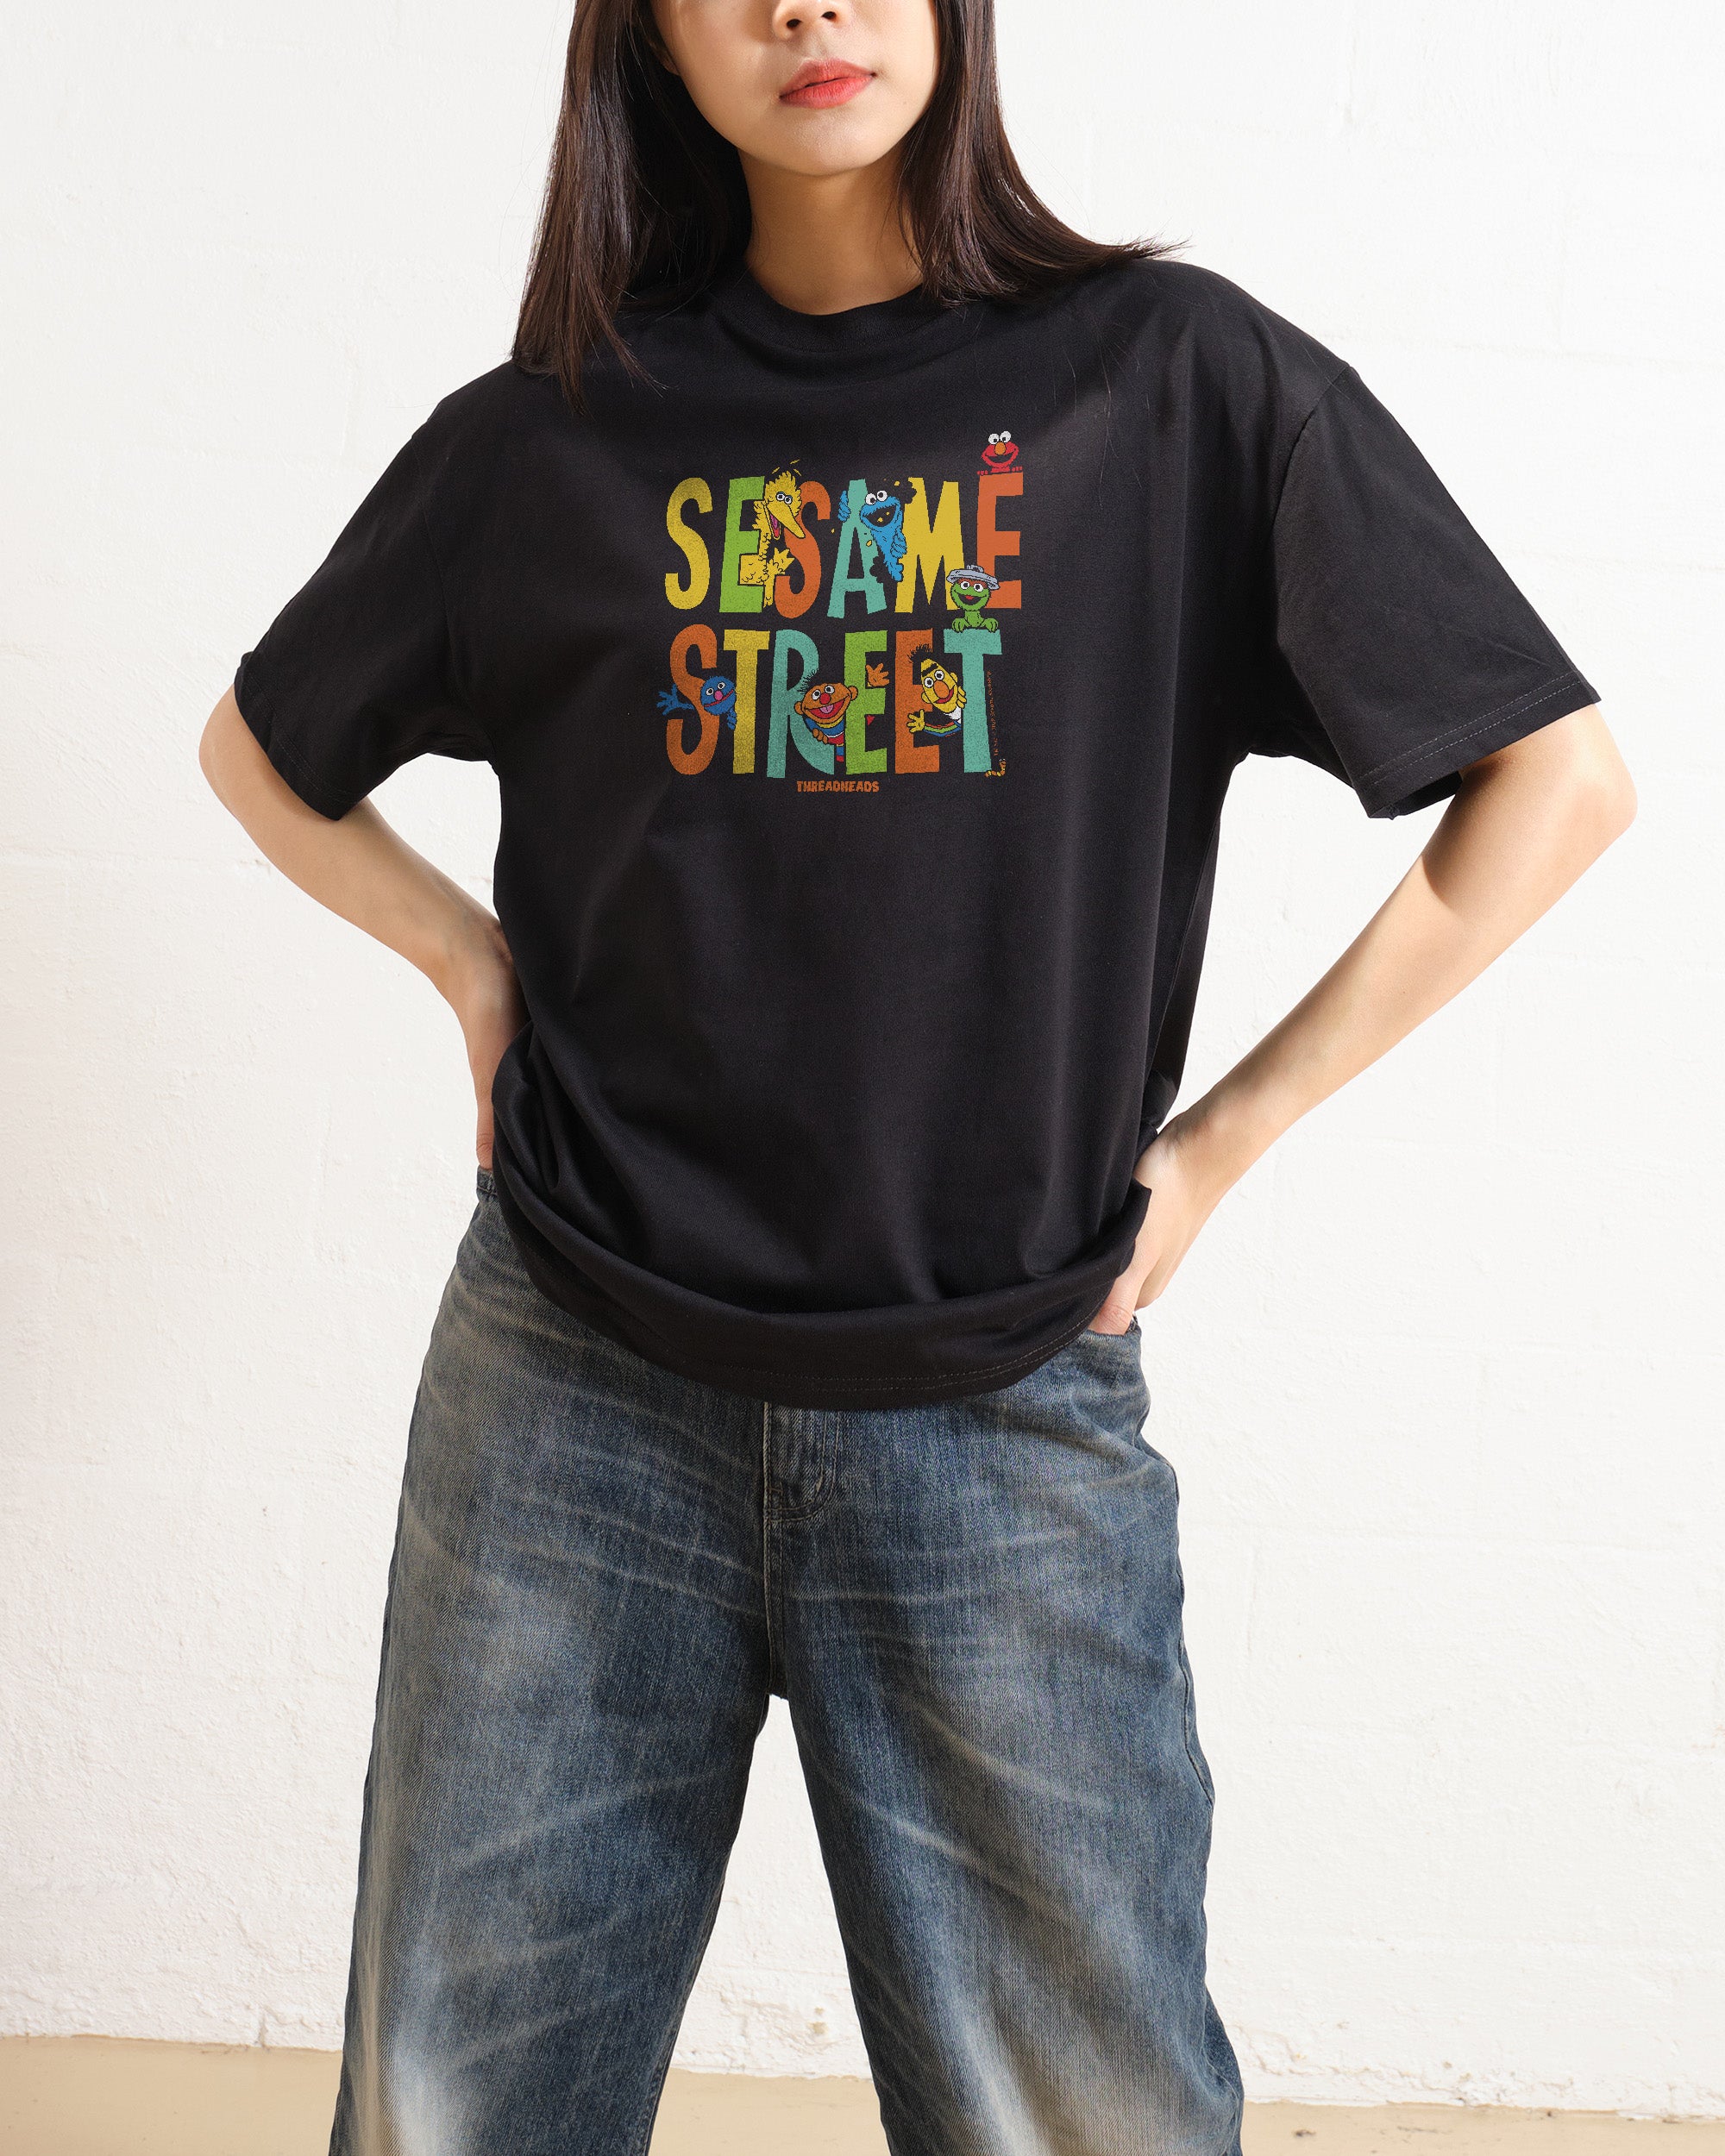 Sesame Street Friends T-Shirt